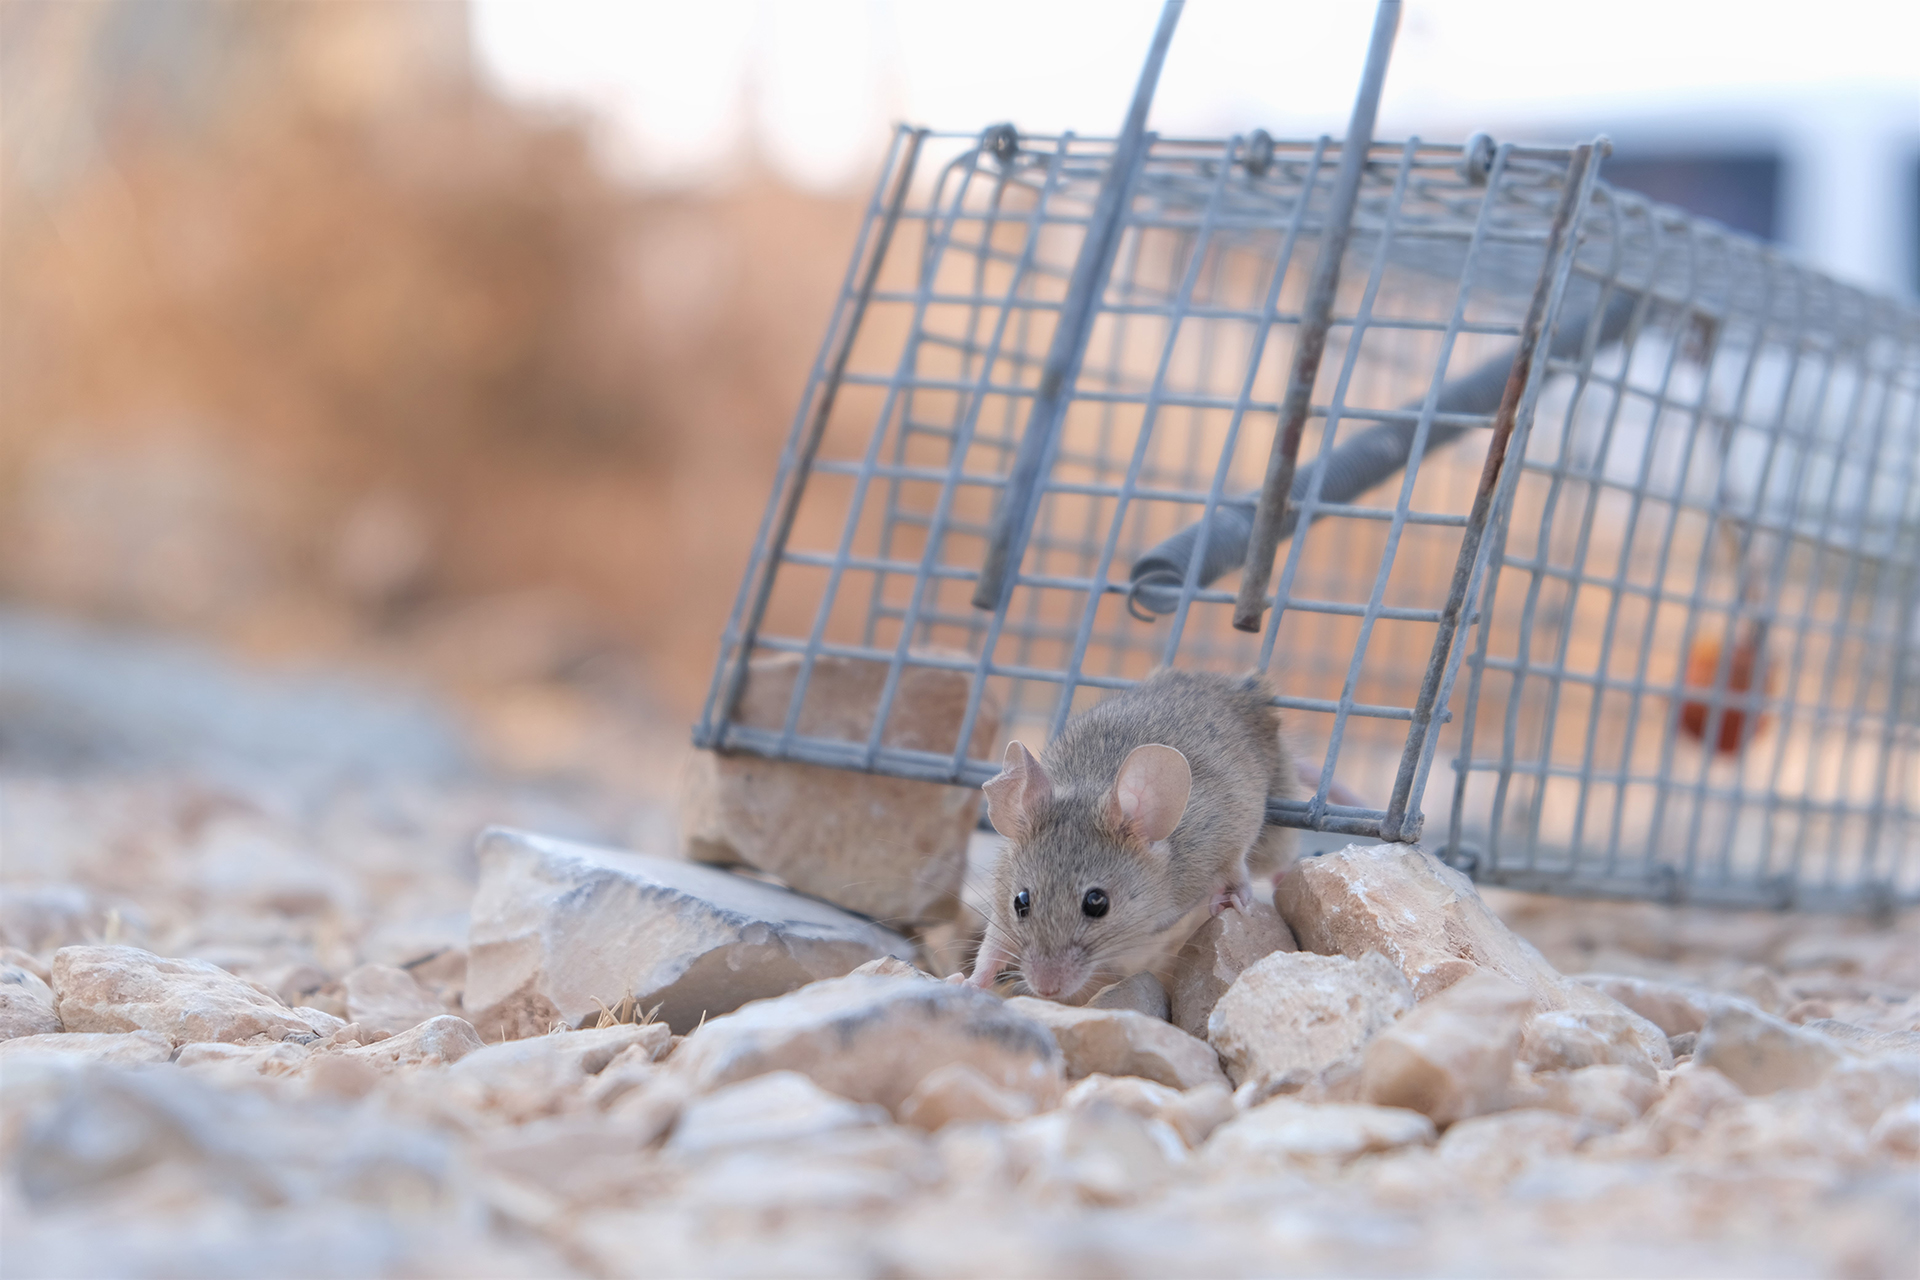 Produit anti souris : les poisons efficaces pour tuer un rat